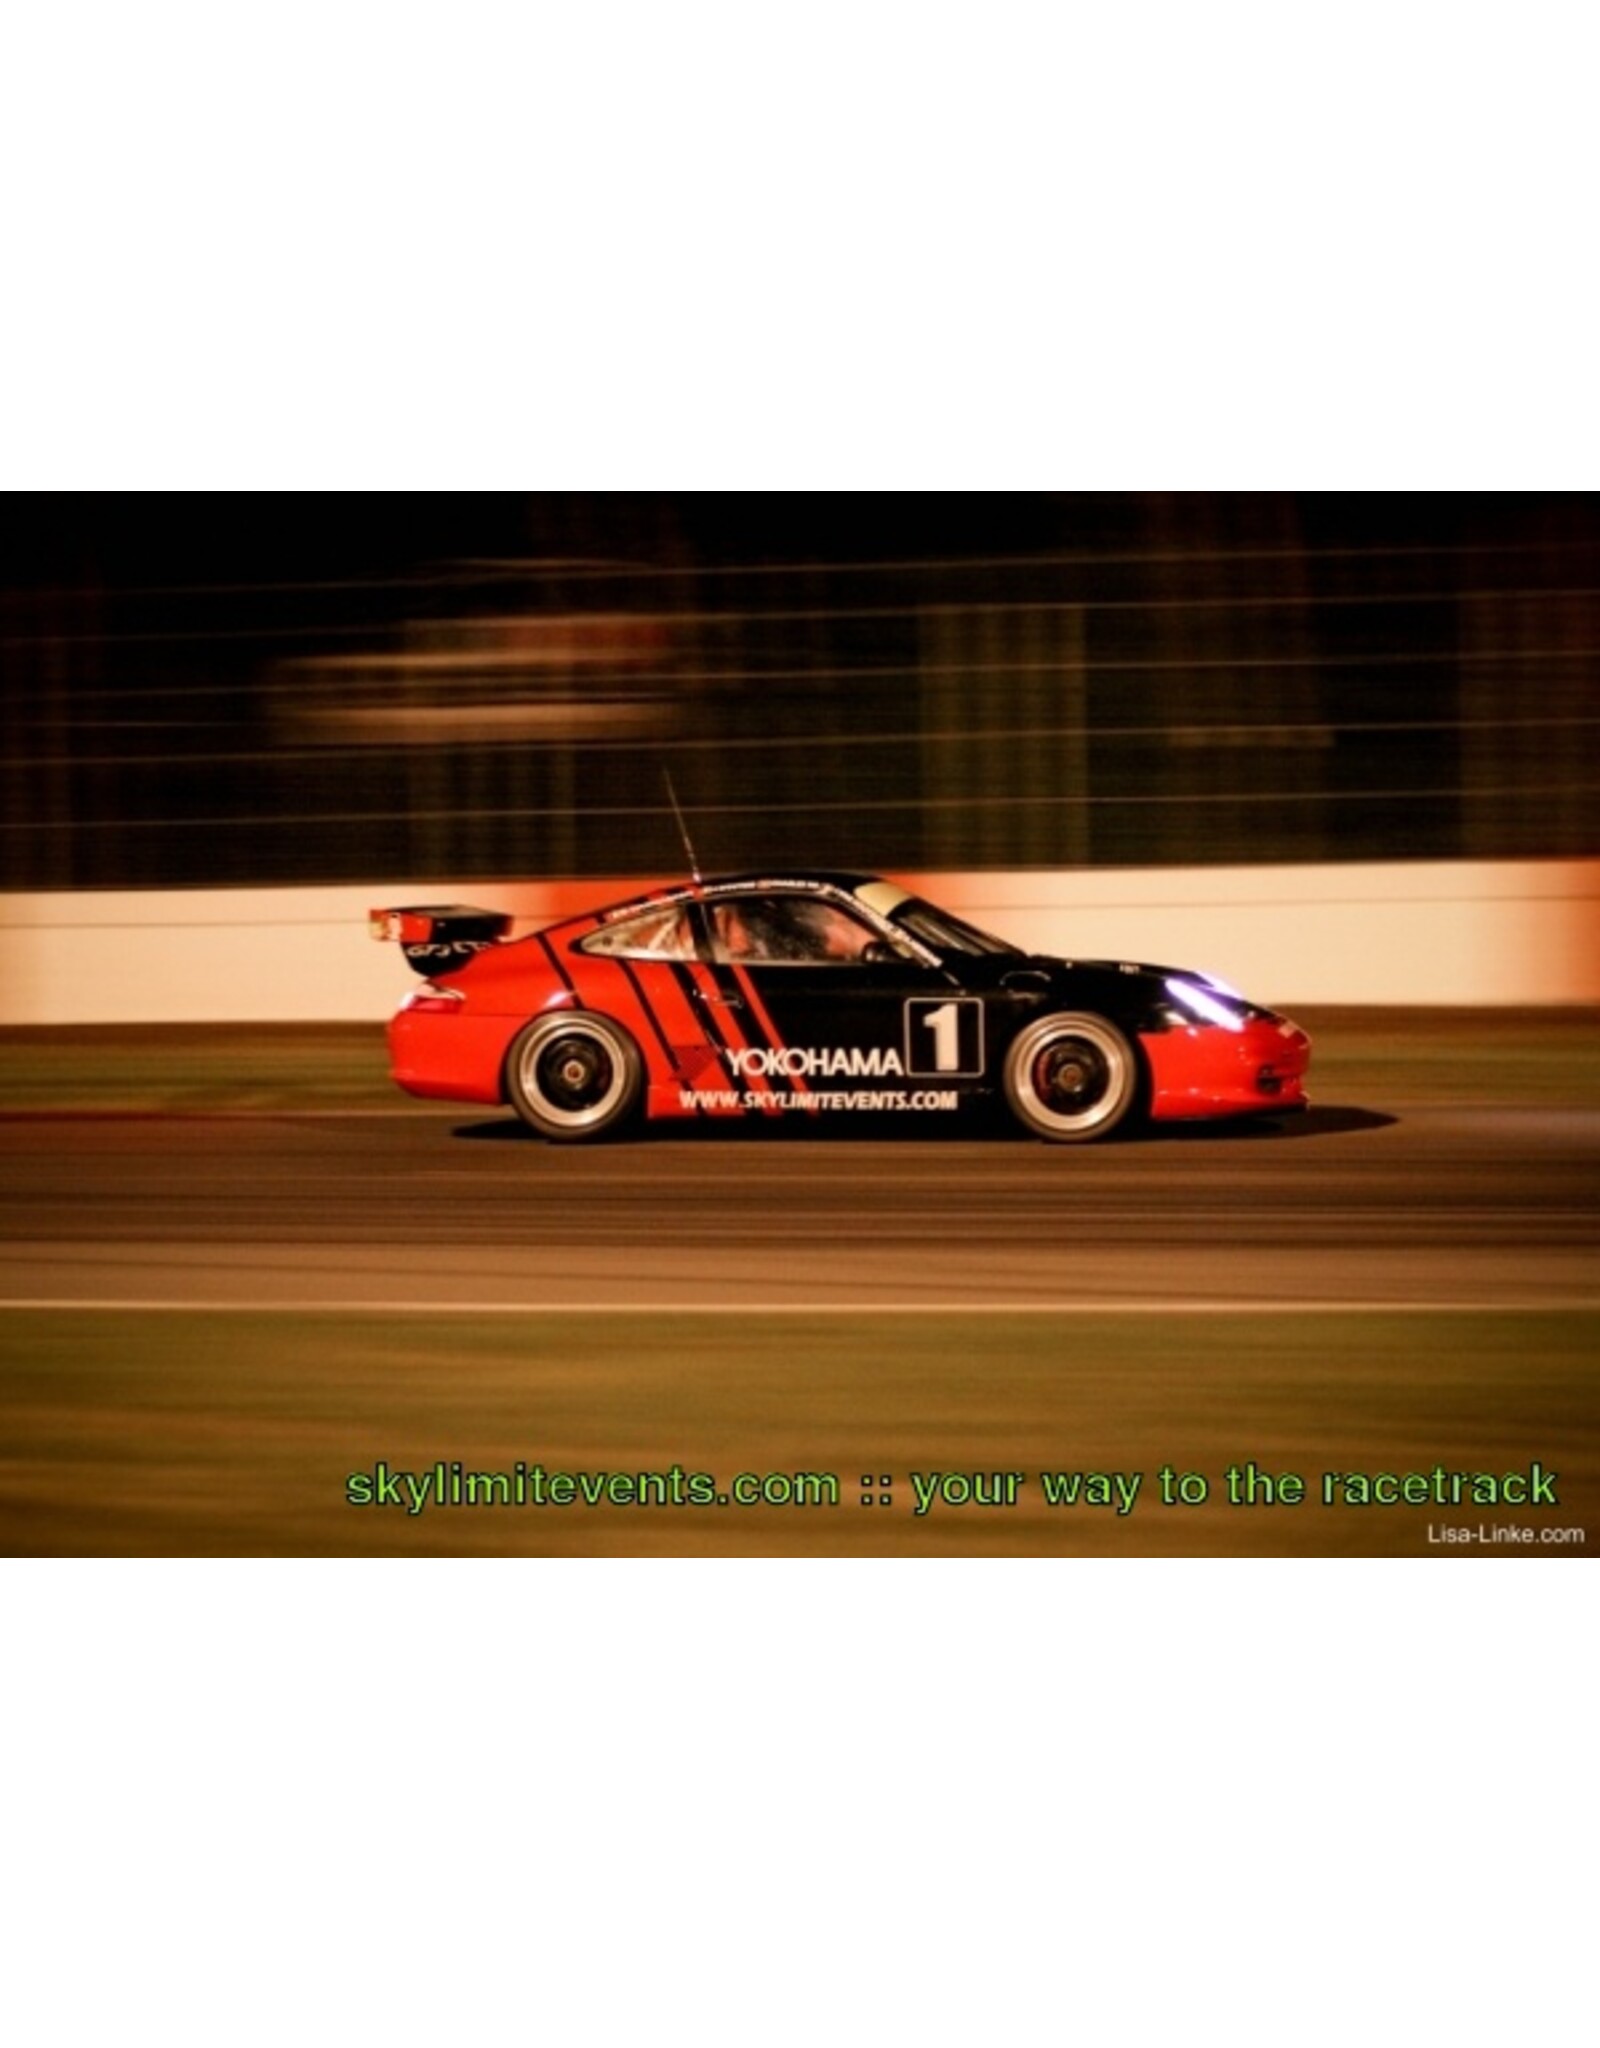 Porsche Porsche 996 GT3 Cup Yokohama #1(Skylimitevents 24h.Zolder 2012)O.Hermans/J.Van Hooydonk/Charles NG/J.Wouters/B.Vanhaeren